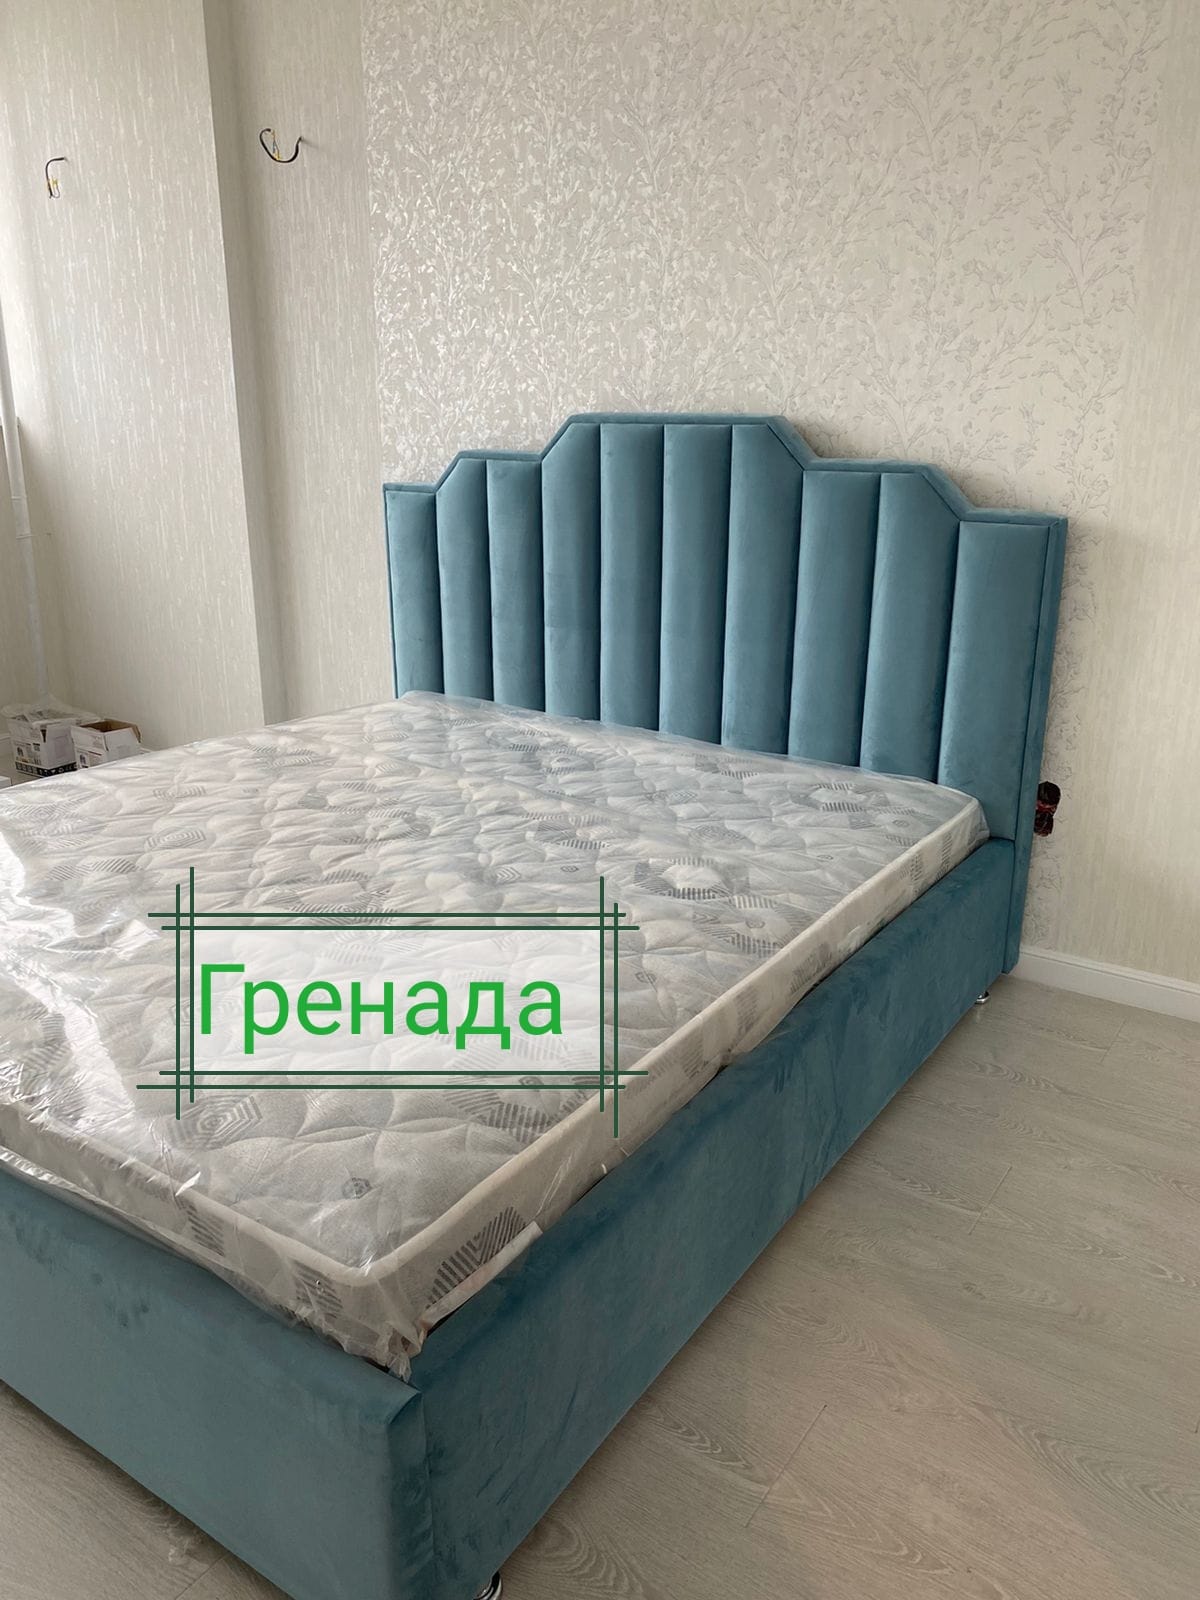 кровать_гренада_1